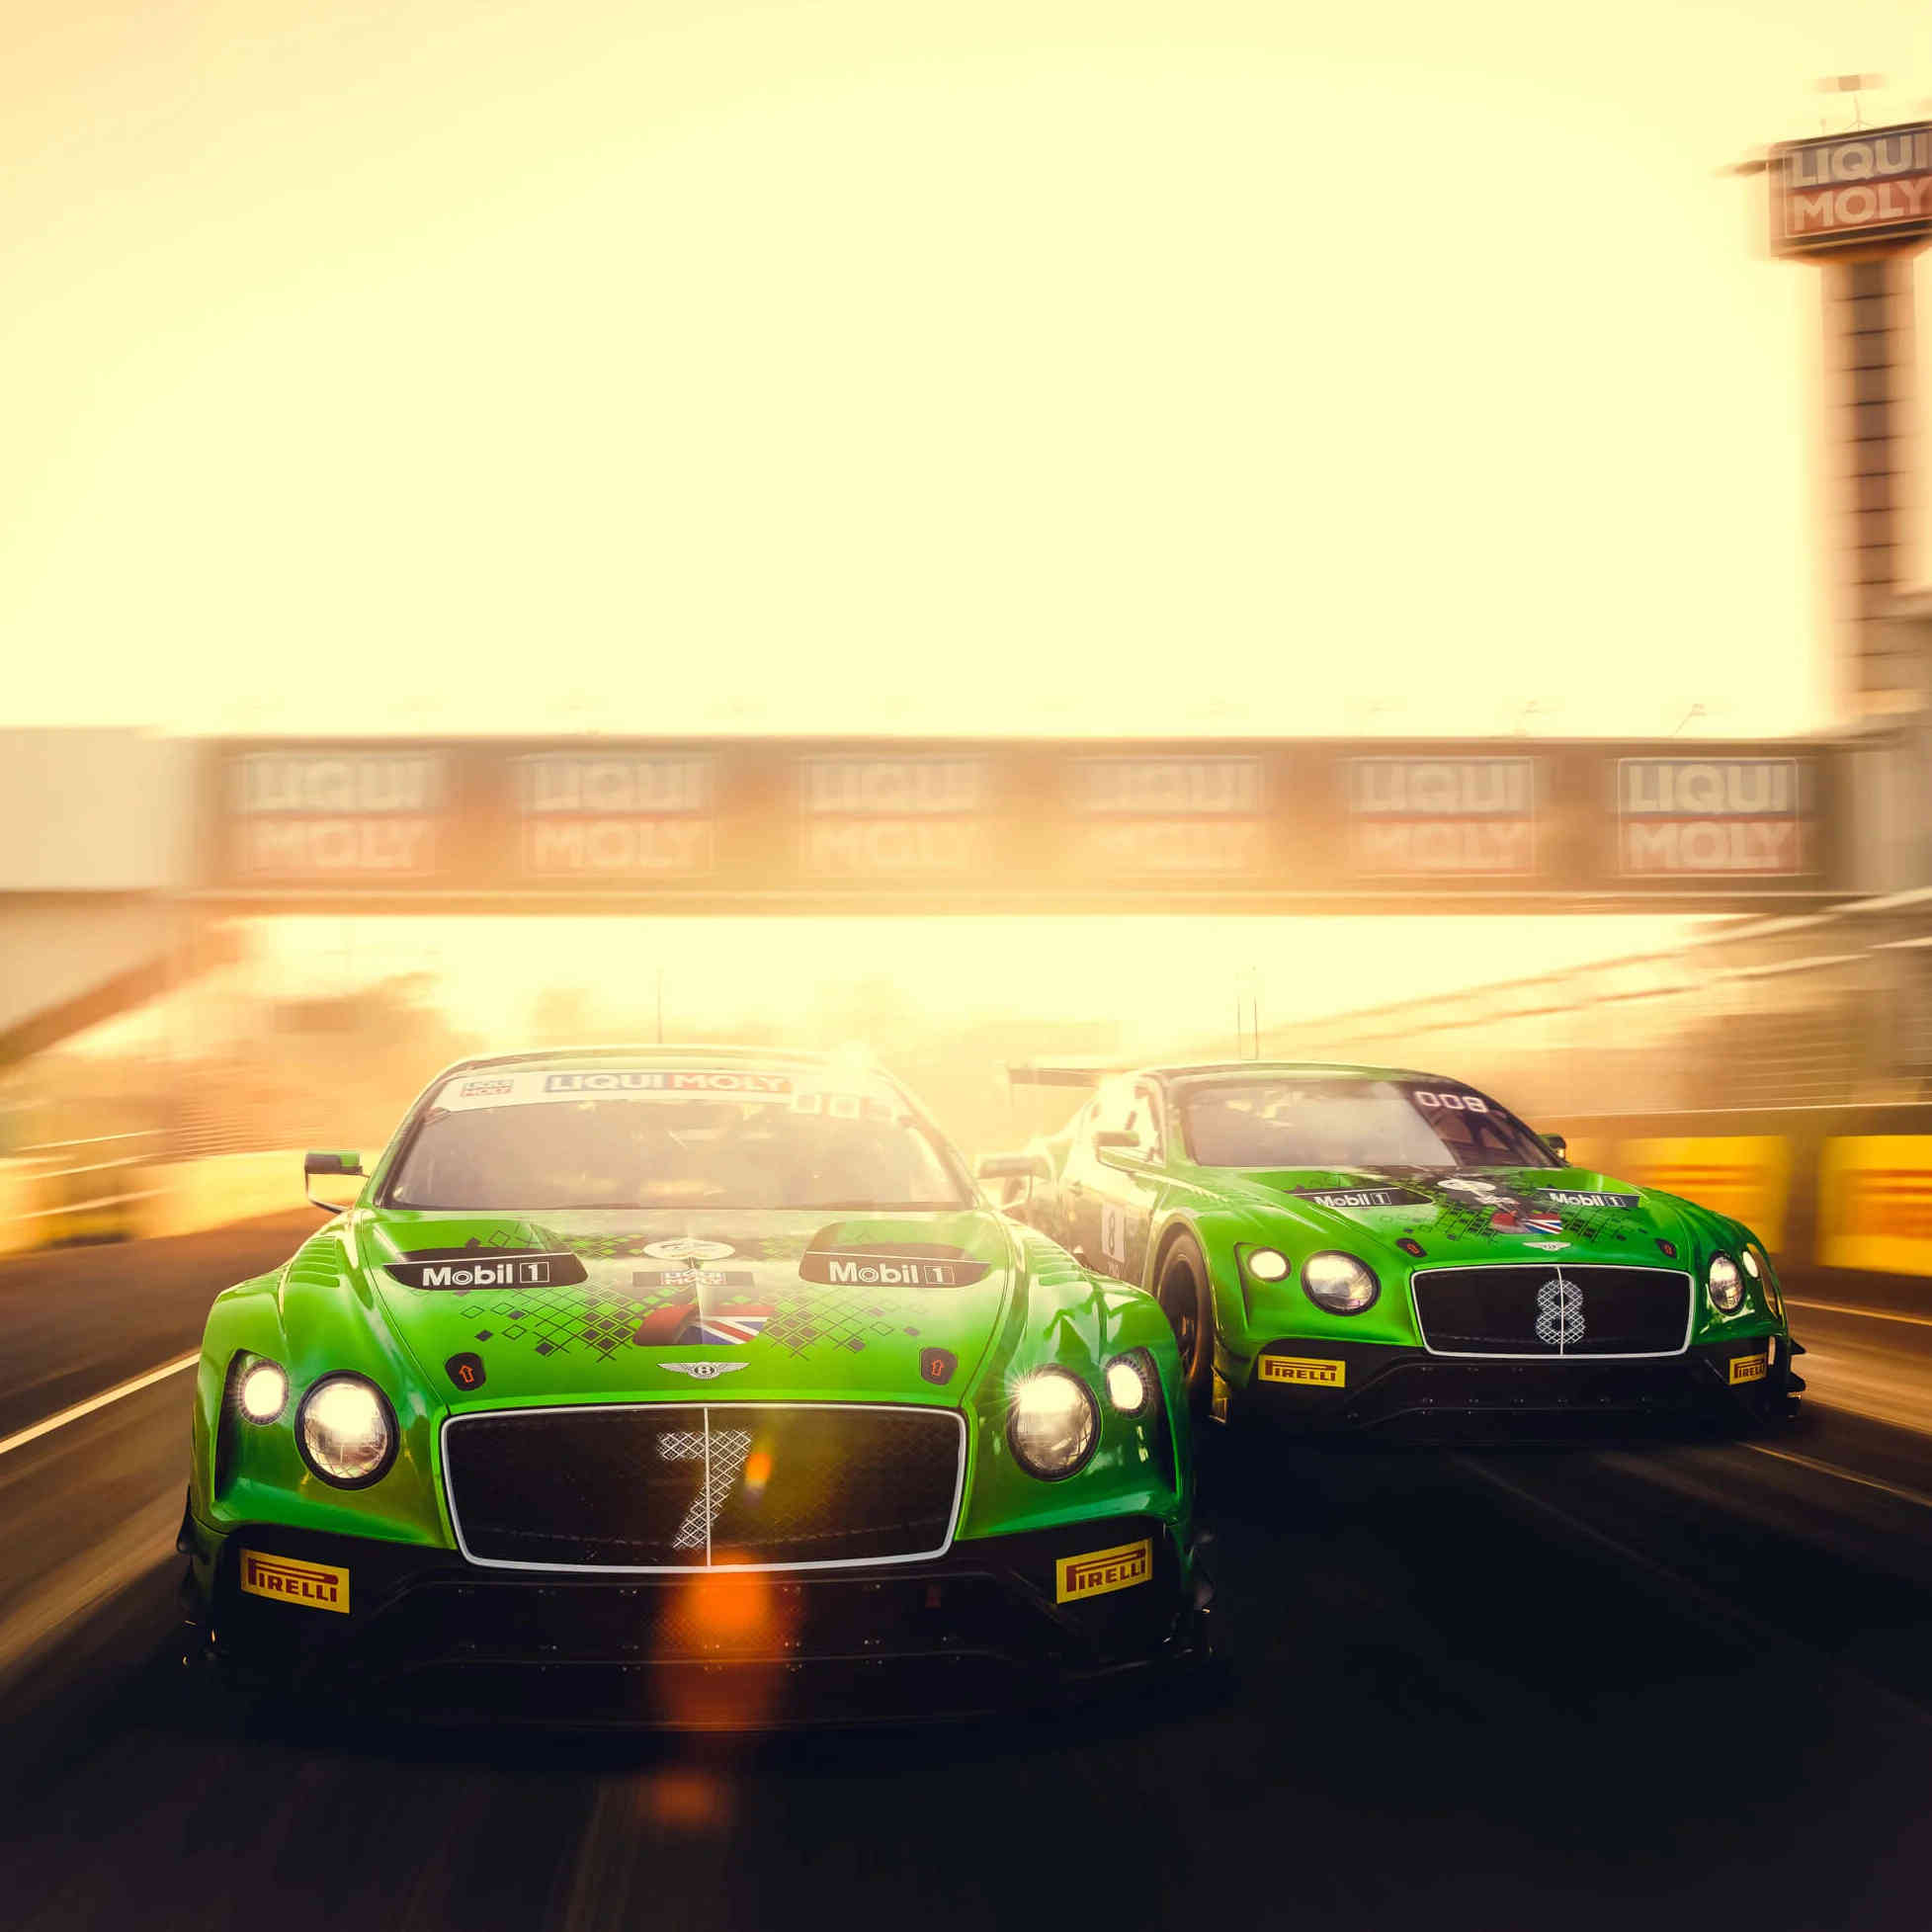 Bentley and M-Sport